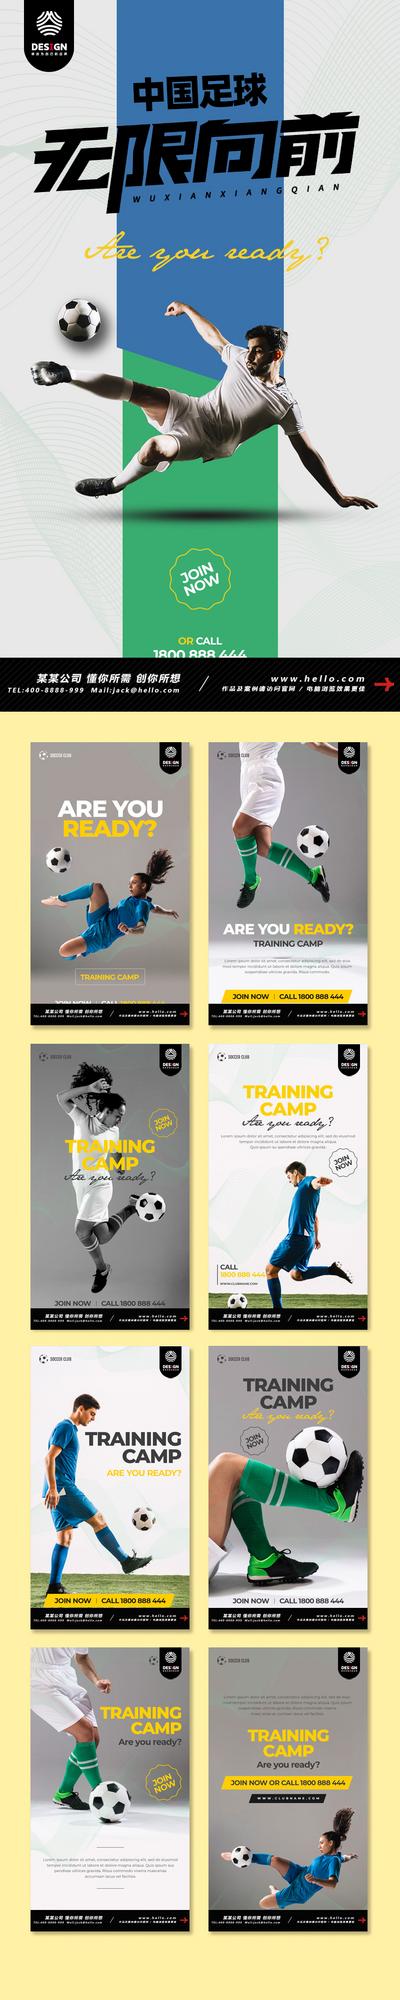 南门网 欧洲杯足球体育运动人物宣传海报